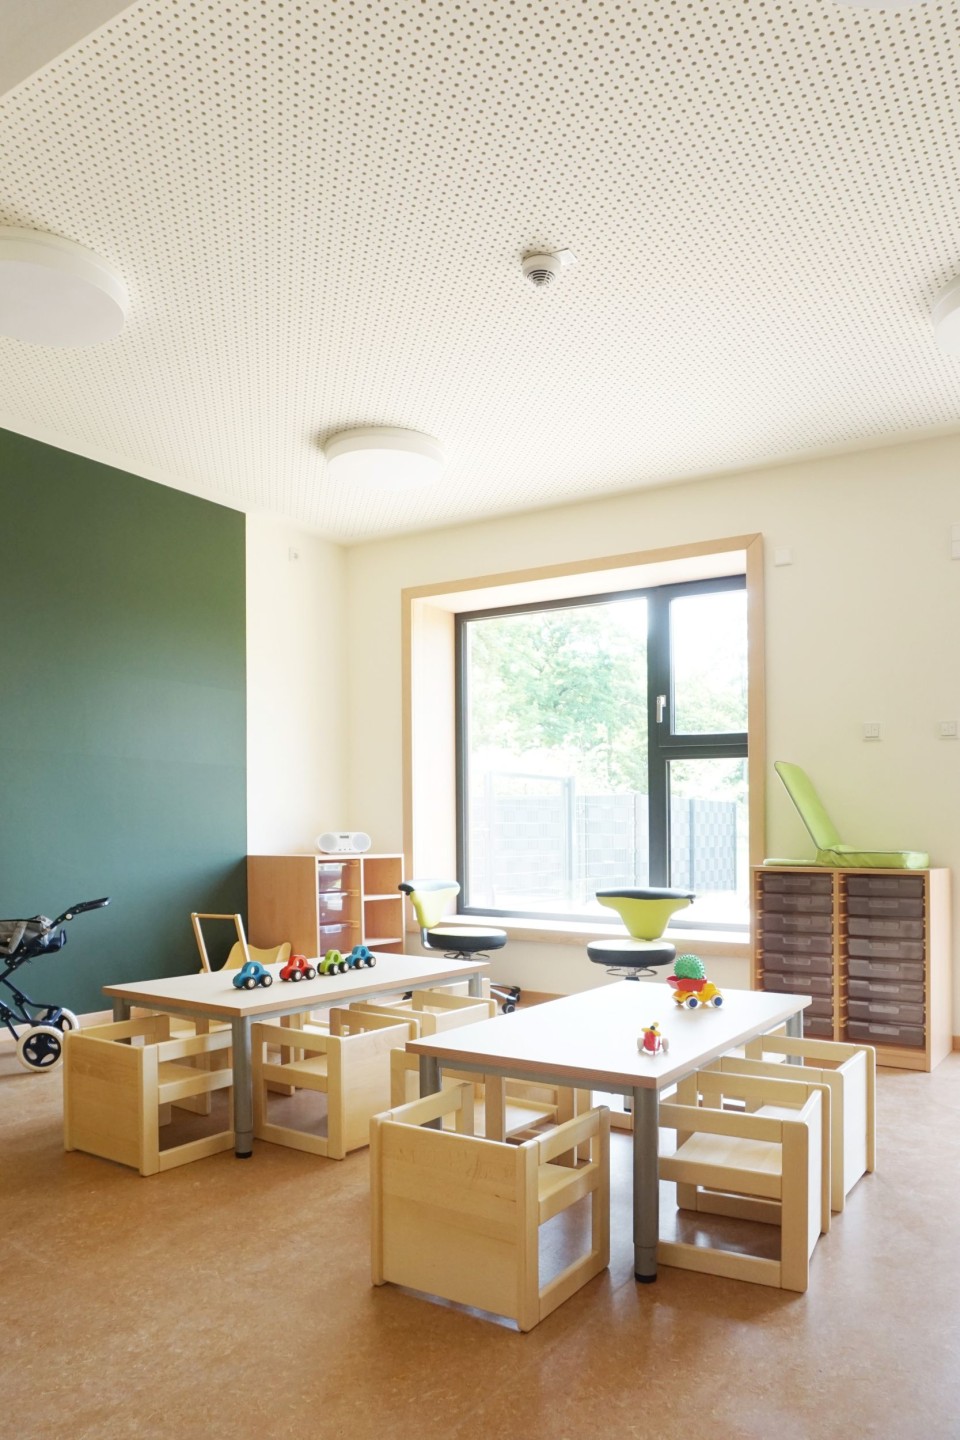 Freundlich eingerichtete Gruppenräume mit Holzmöbeln und viel Platz zum Spielen